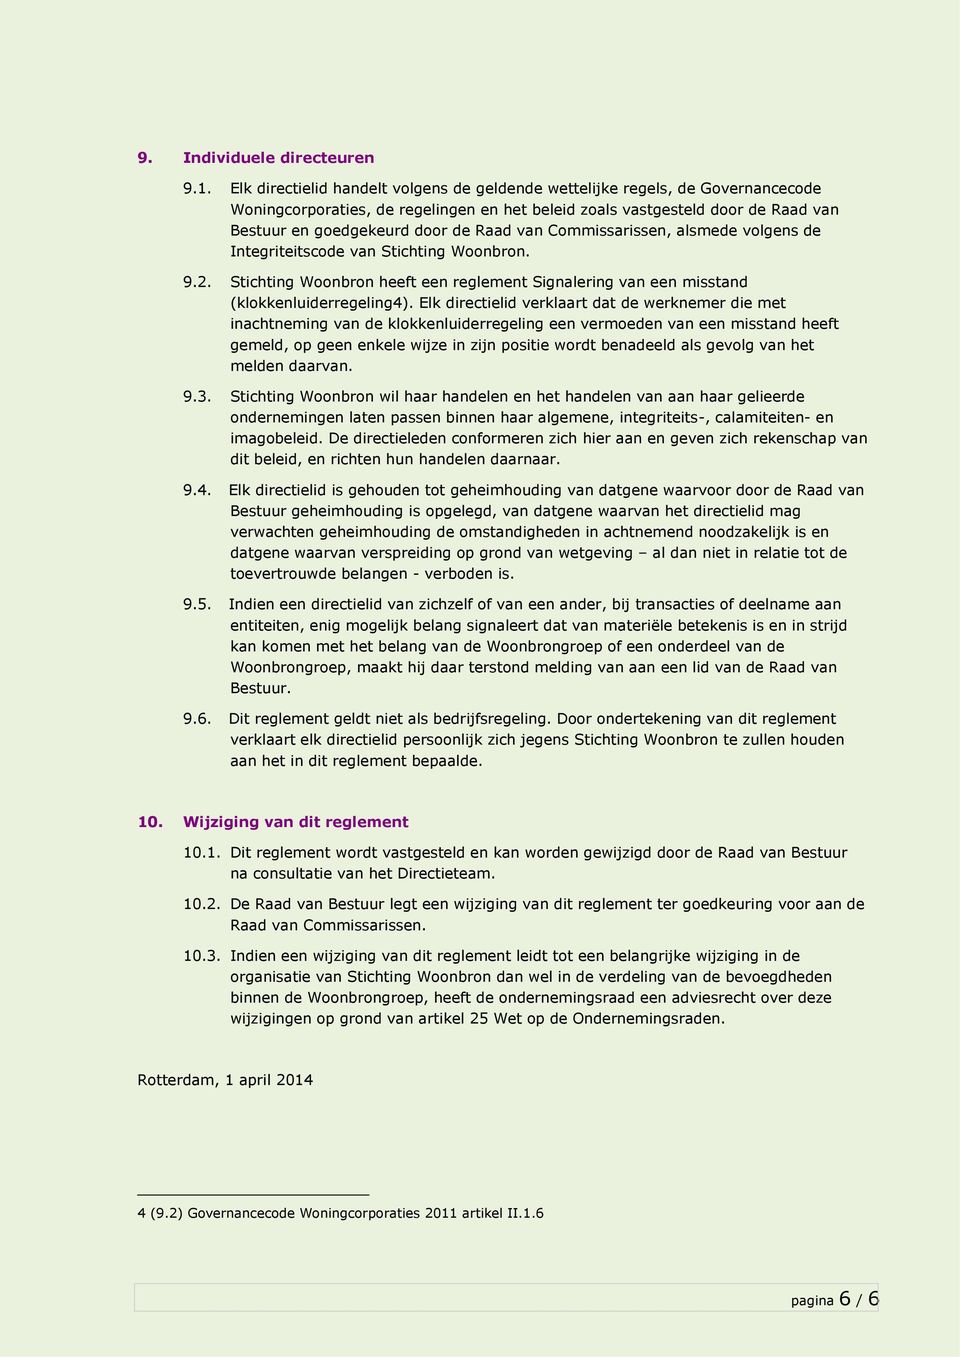 van Commissarissen, alsmede volgens de Integriteitscode van Stichting Woonbron. 9.2. Stichting Woonbron heeft een reglement Signalering van een misstand (klokkenluiderregeling4).